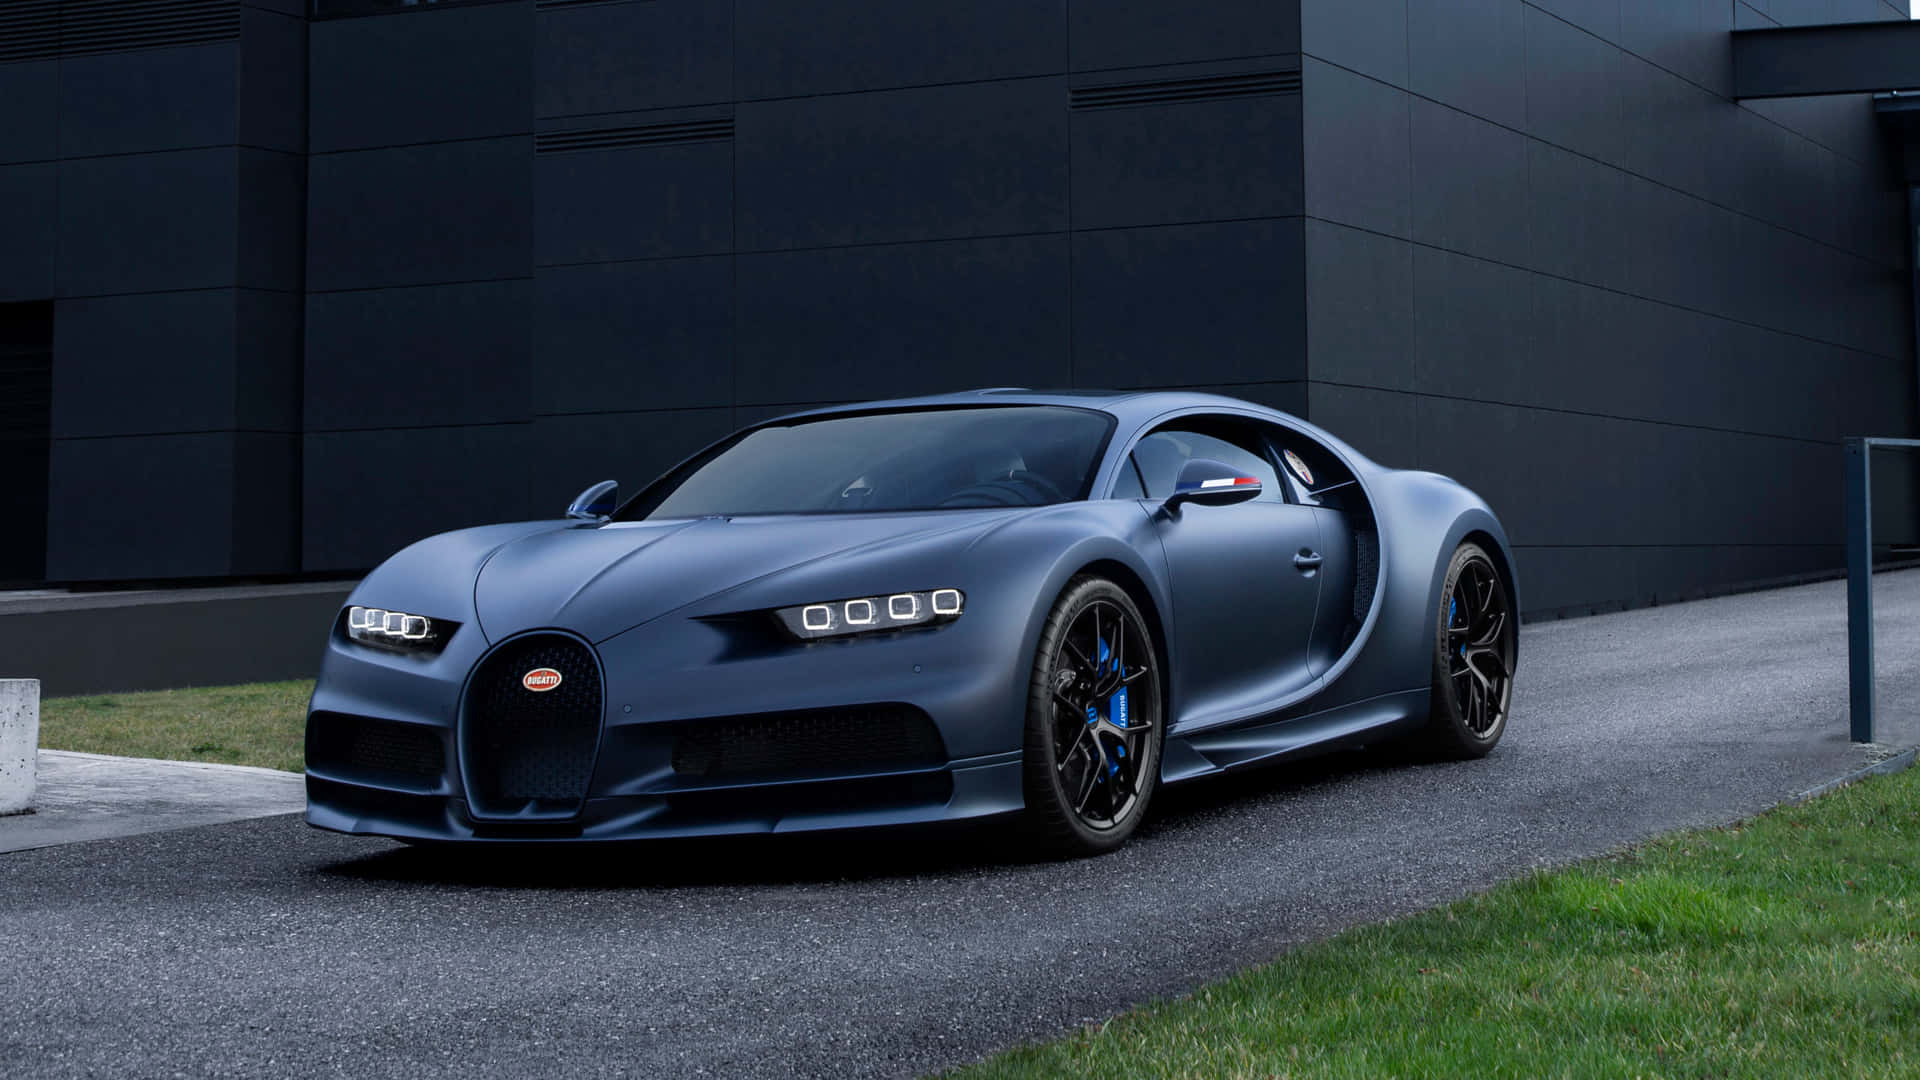 Sejl gennem gaderne i stil med dette bedste Bugatti wallpaper.